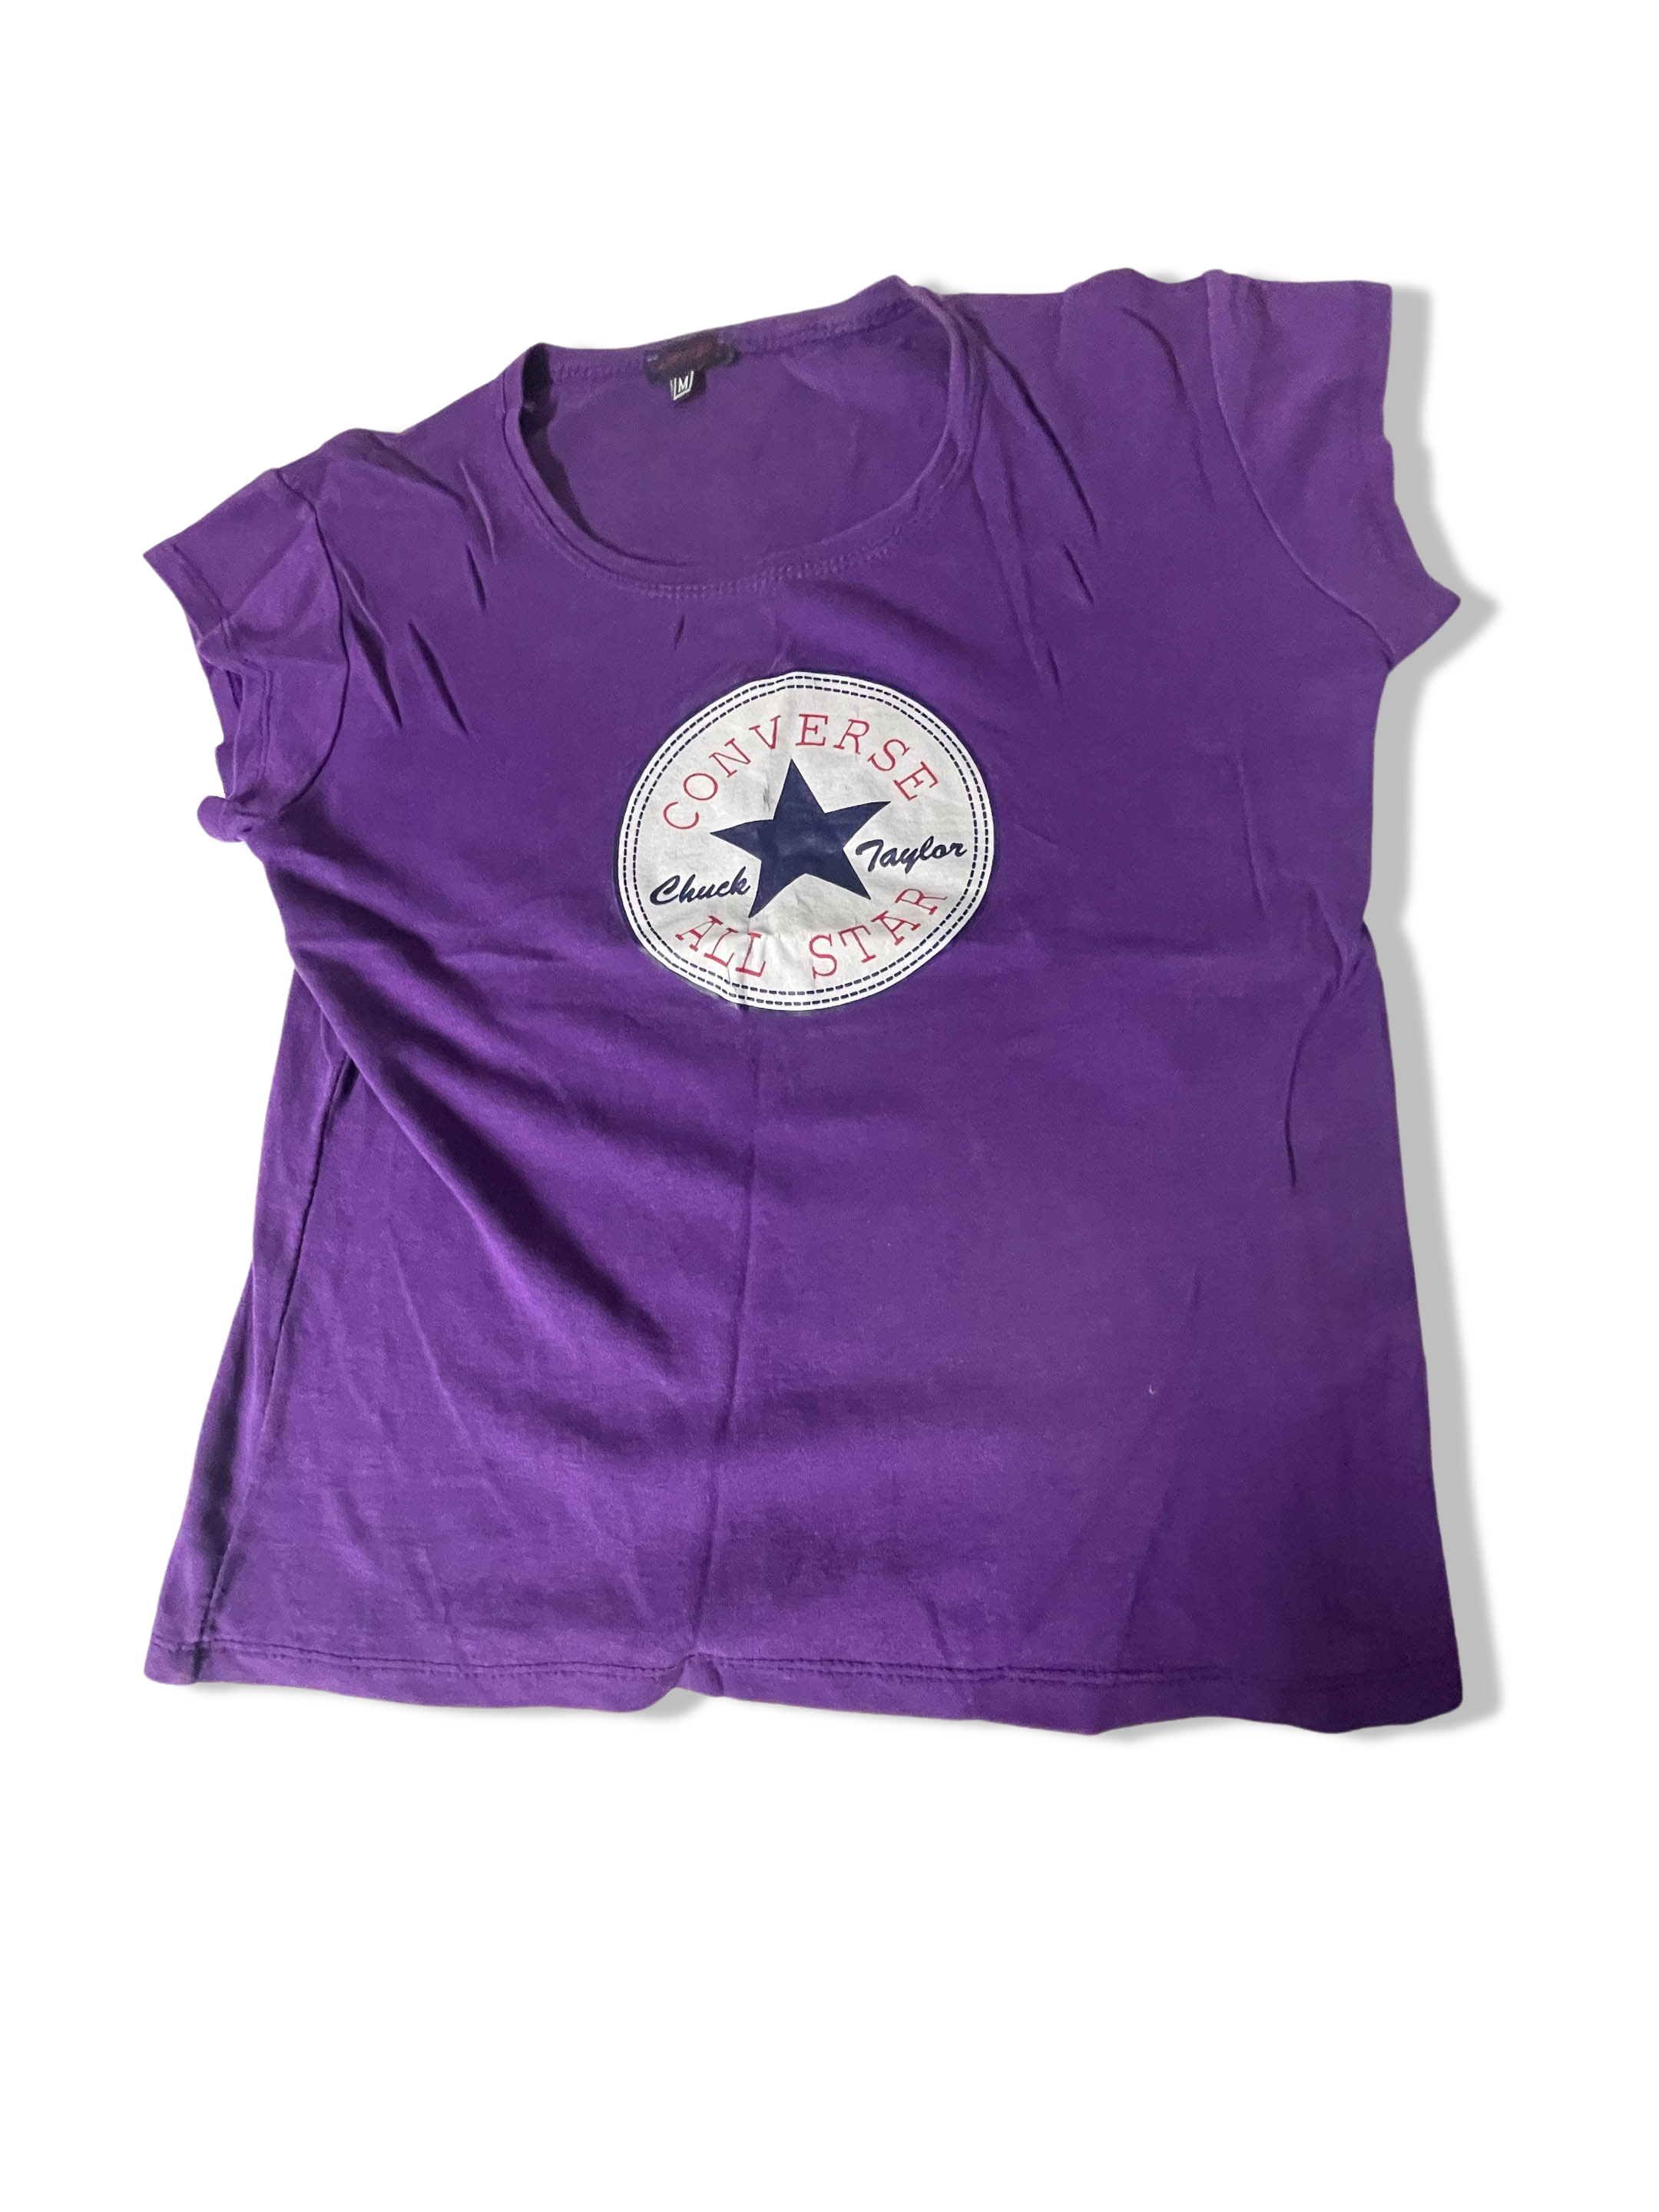 Vintage Purple Converse All Stars Graphics medium tees